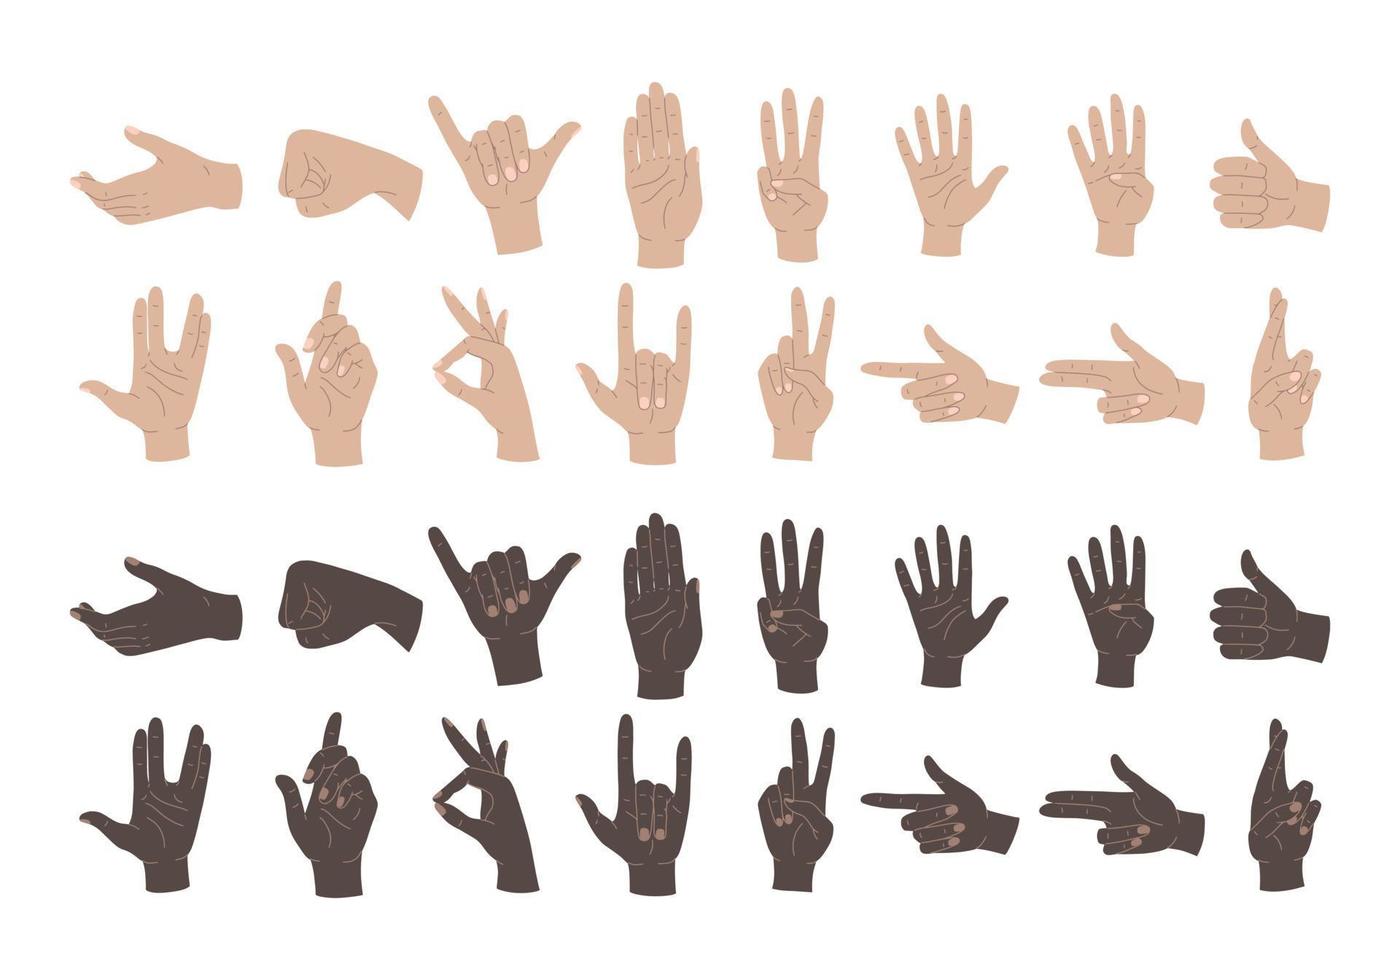 gesti delle mani. insieme di mani umane, segni e gesti, figure e movimenti delle dita. illustrazioni vettoriali isolate mani di colori diversi su sfondo bianco